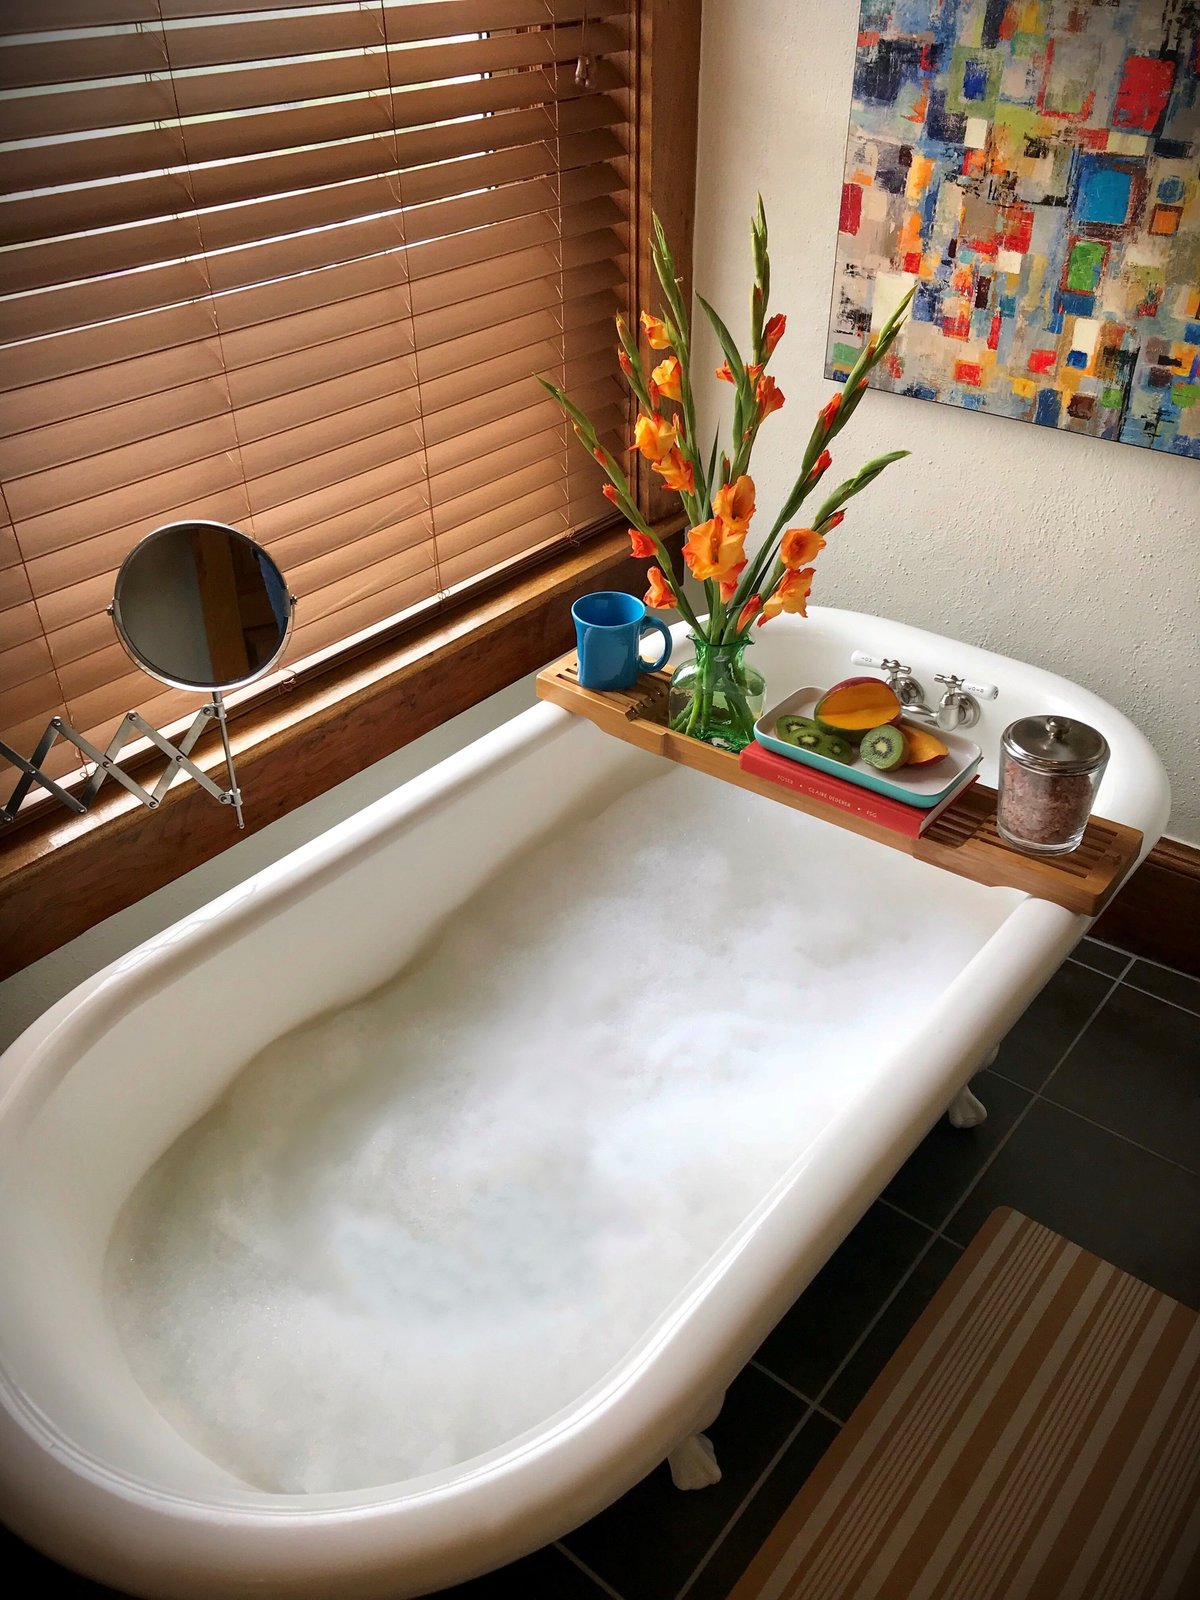 The bathtub in vacation rental 1, Nuttall.